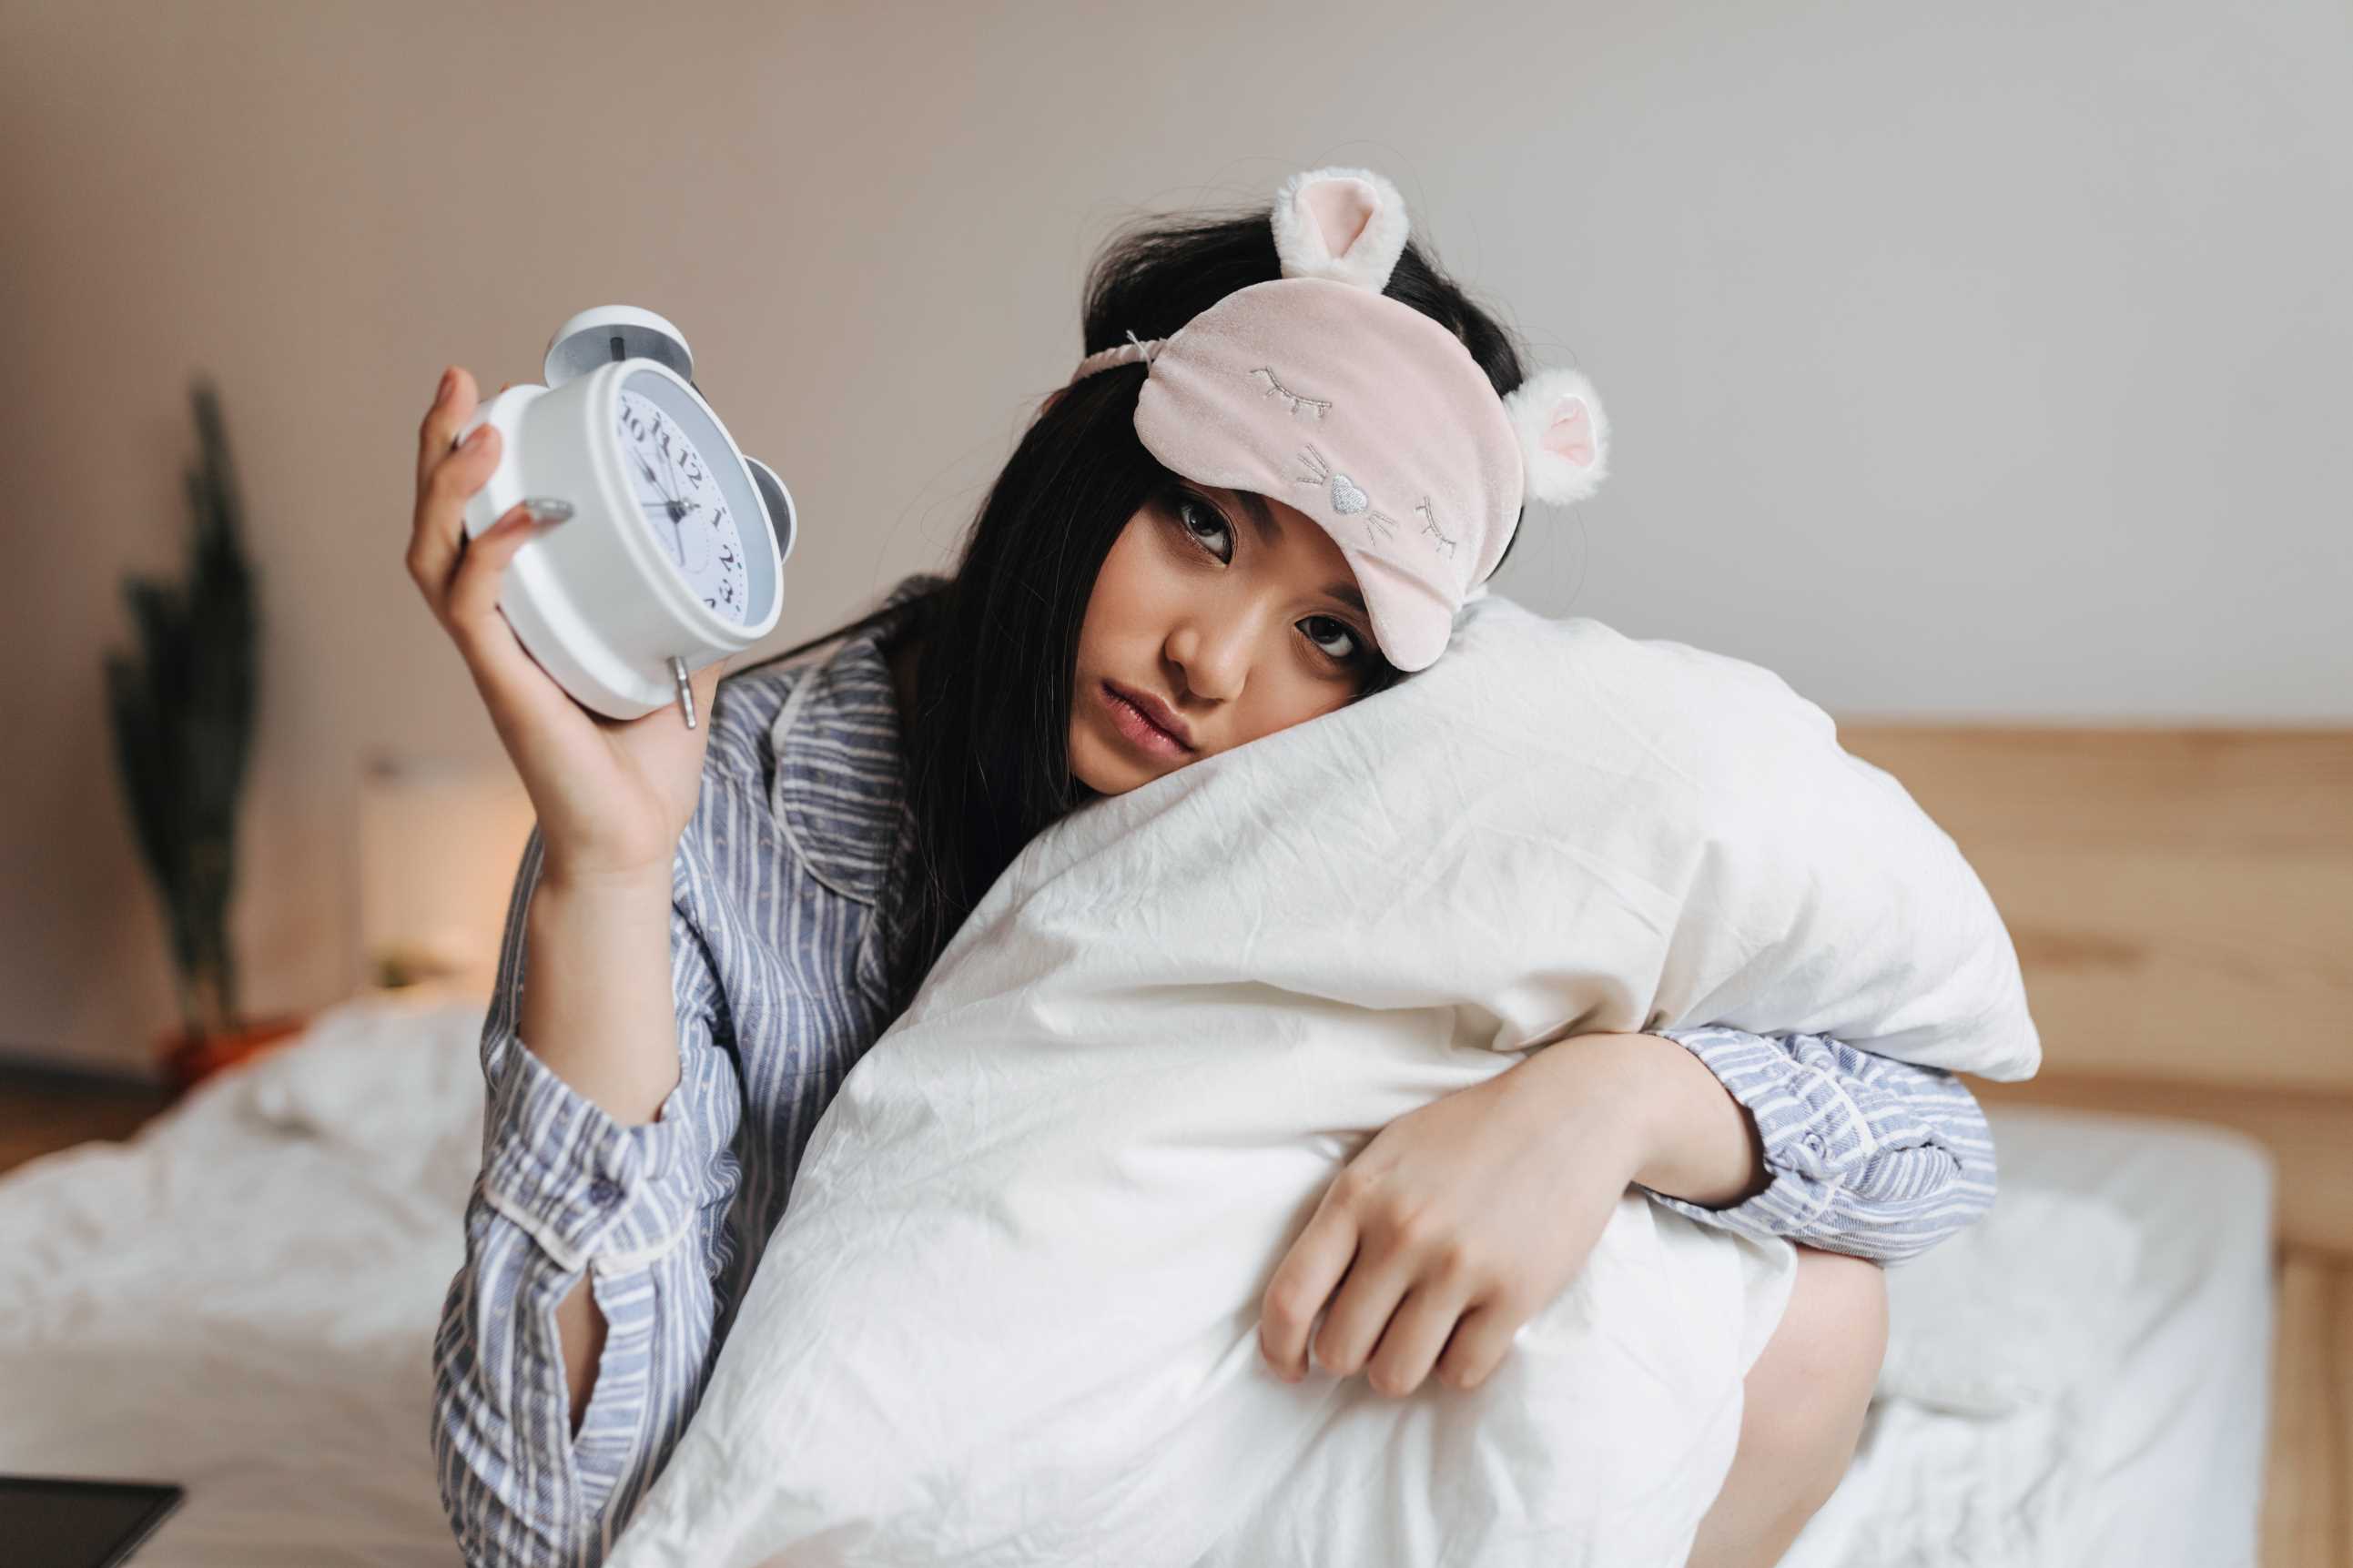 Ini Dia 10 Cara Mengatasi Insomnia secara Alami Tanpa Obat, Dijamin Efektif!